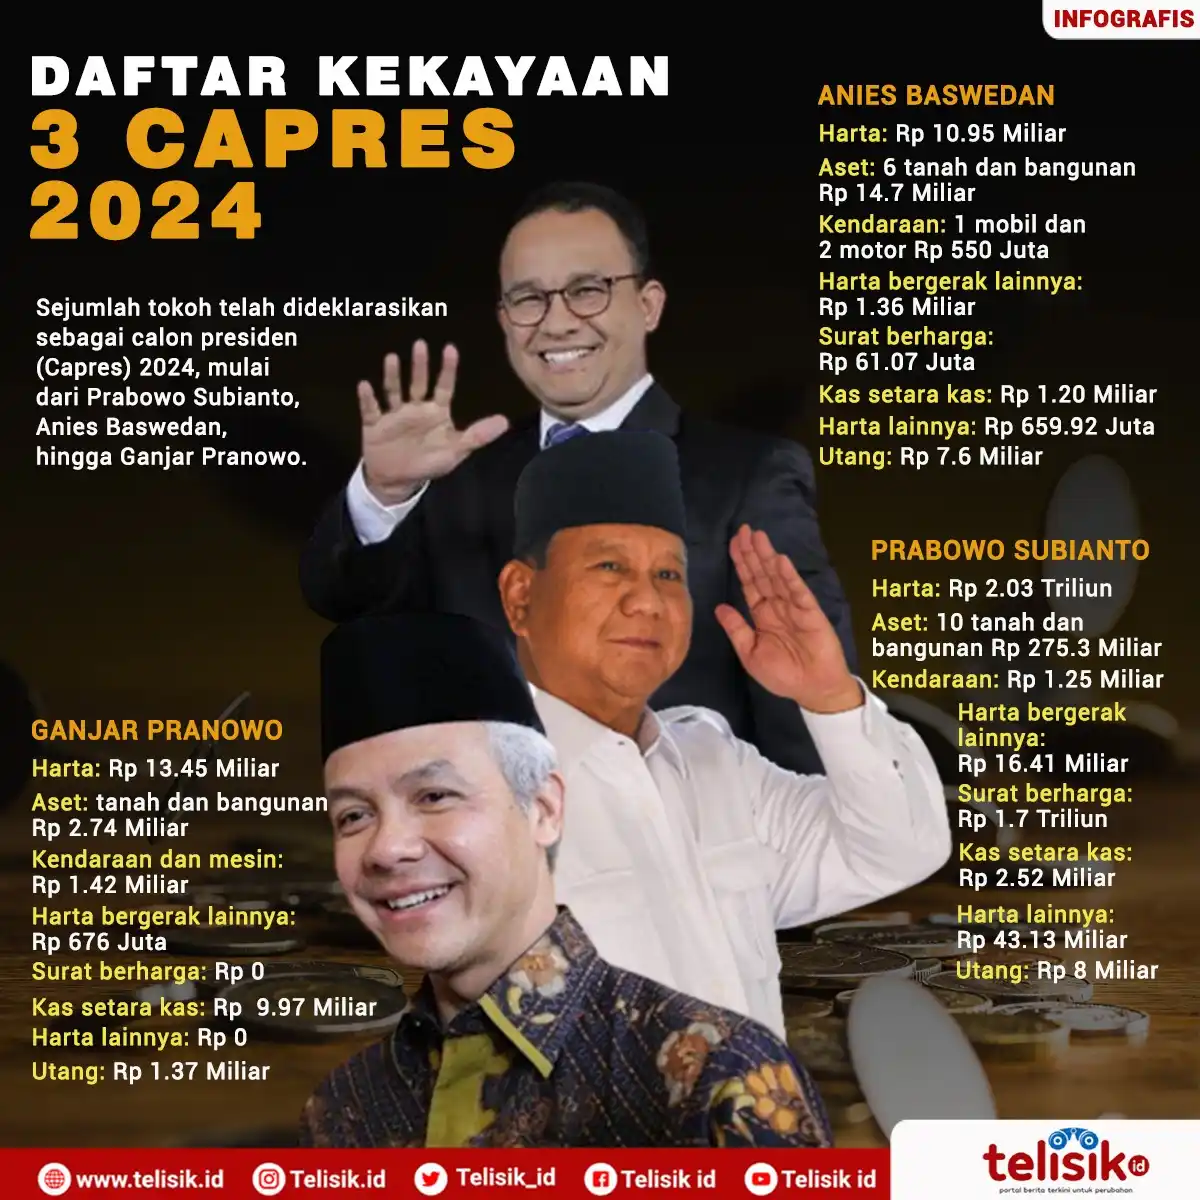 Infografis: Daftar Kekayaan 3 Calon Presiden 2024, Anies Baswedan Calon Presiden Termiskin